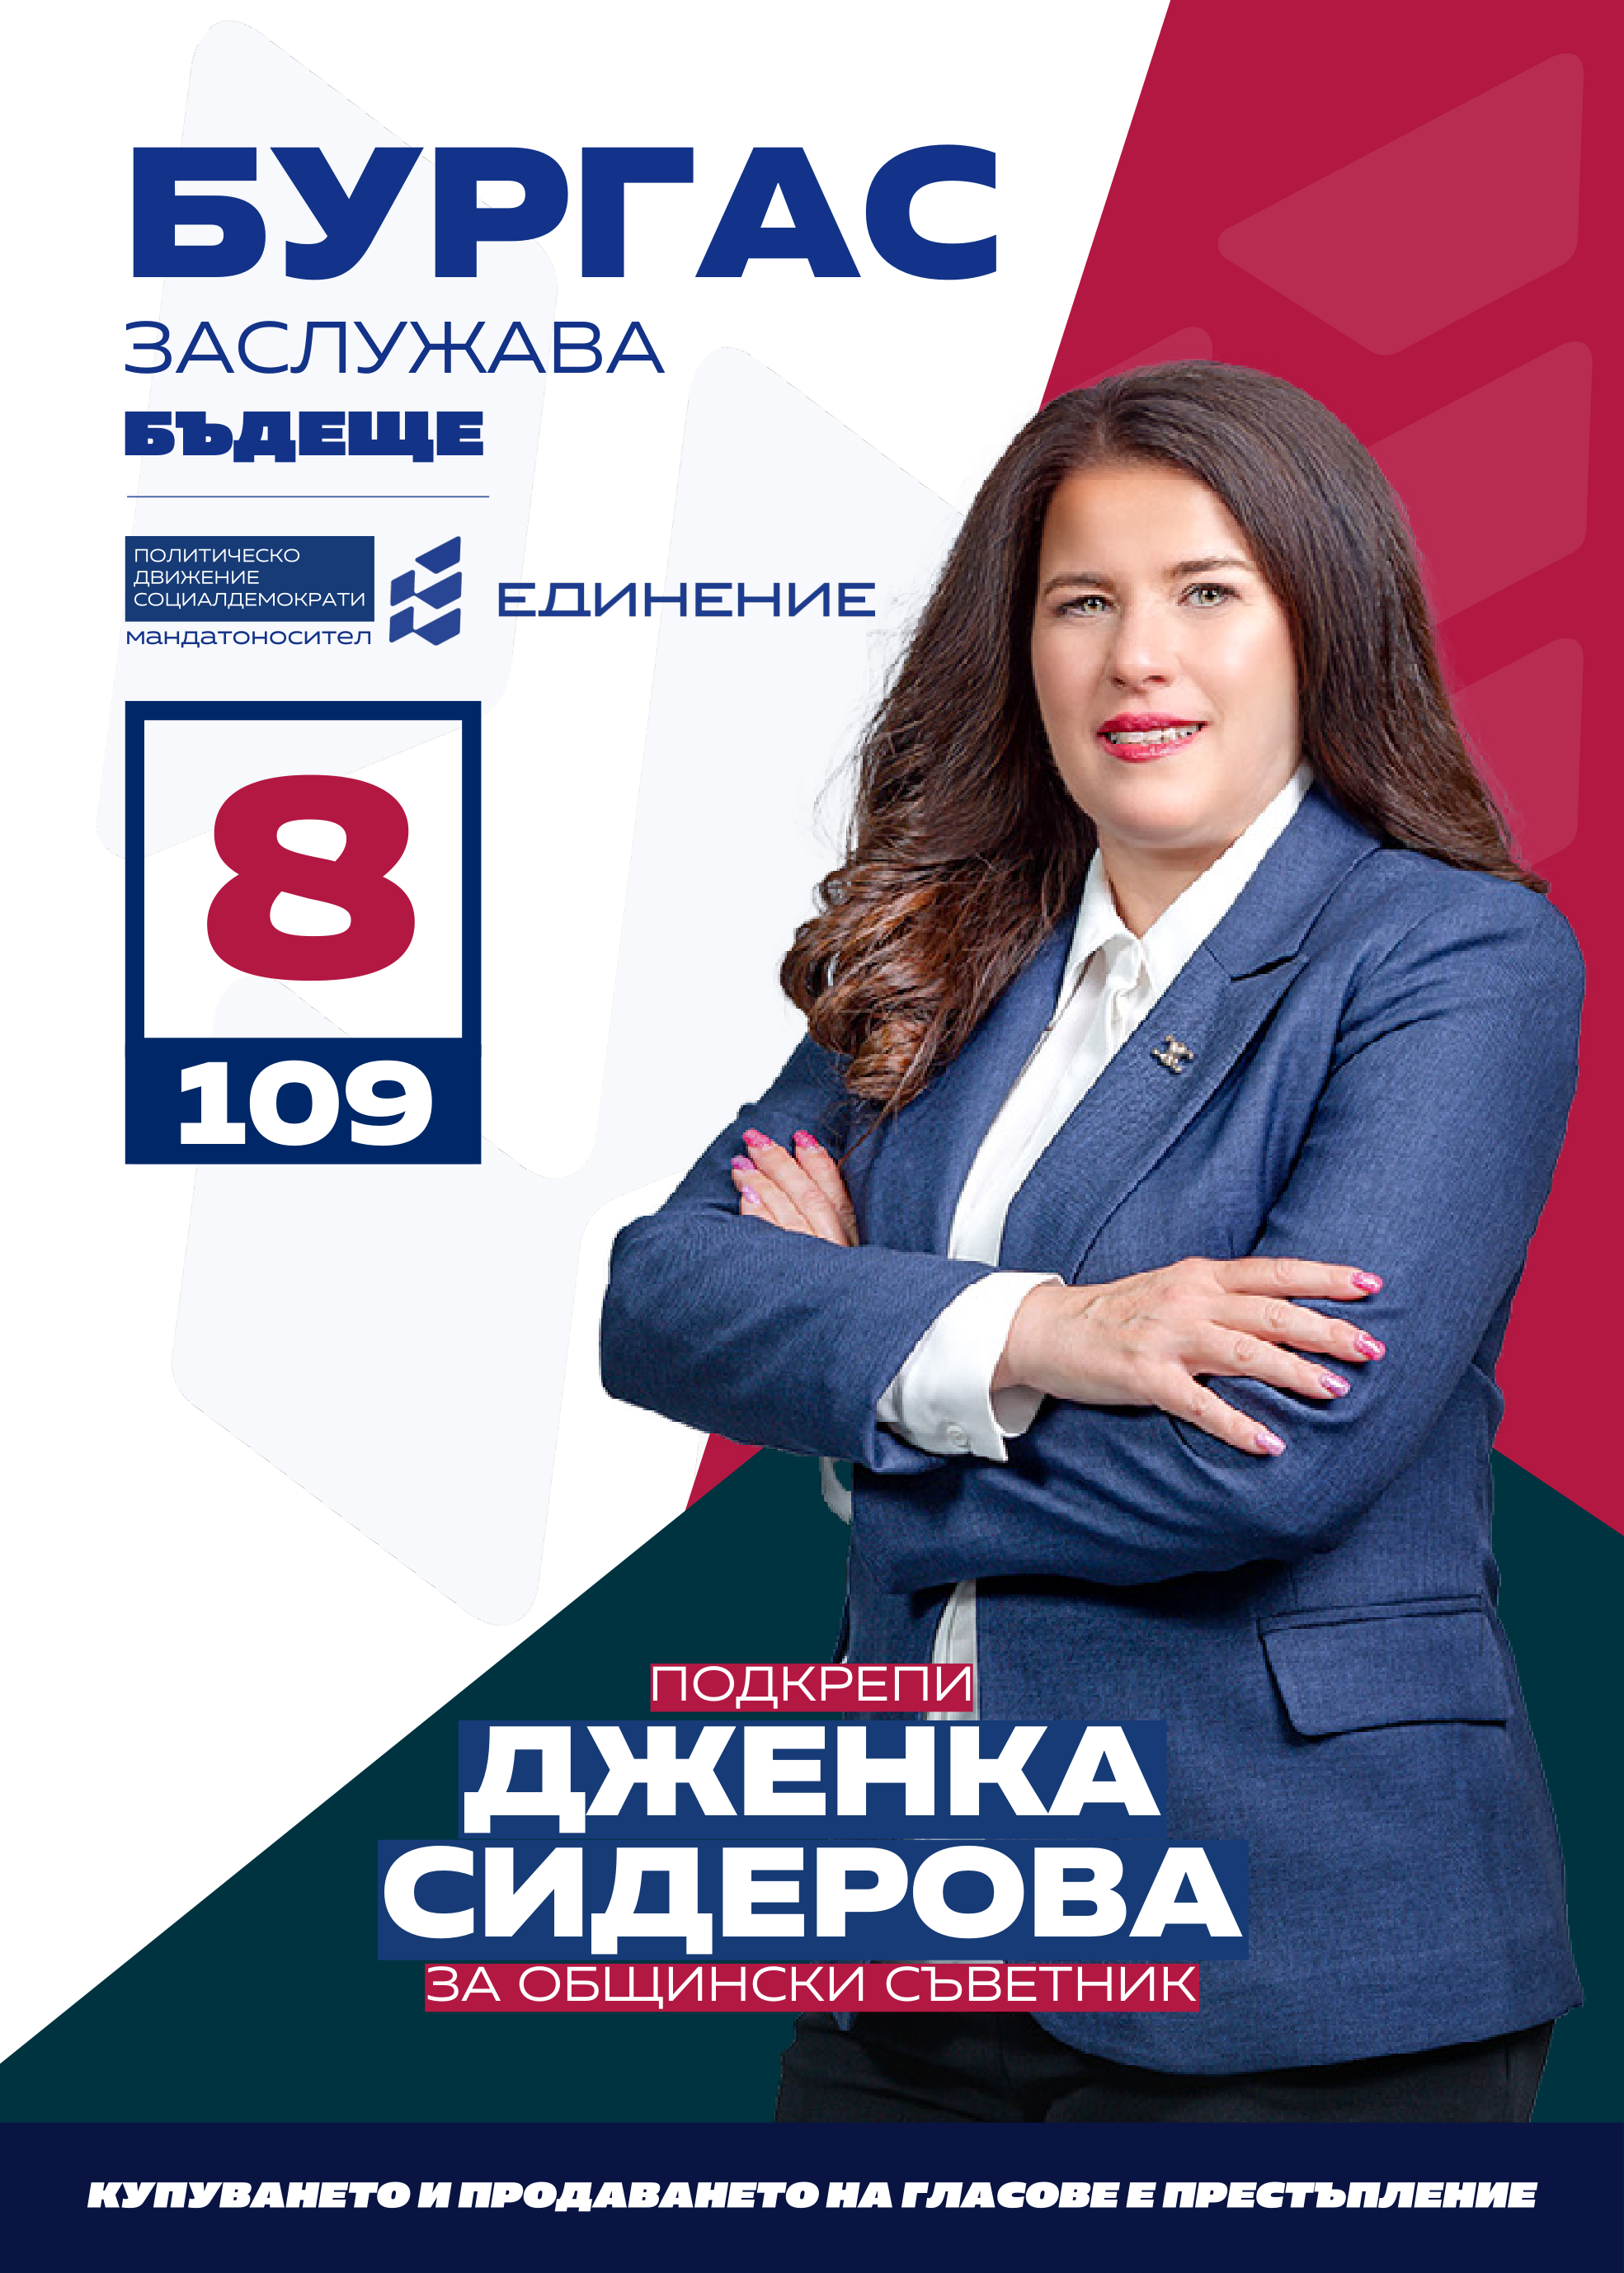 Дженка Сидерова – счетоводител живее в Бургас. Завършила е специалност